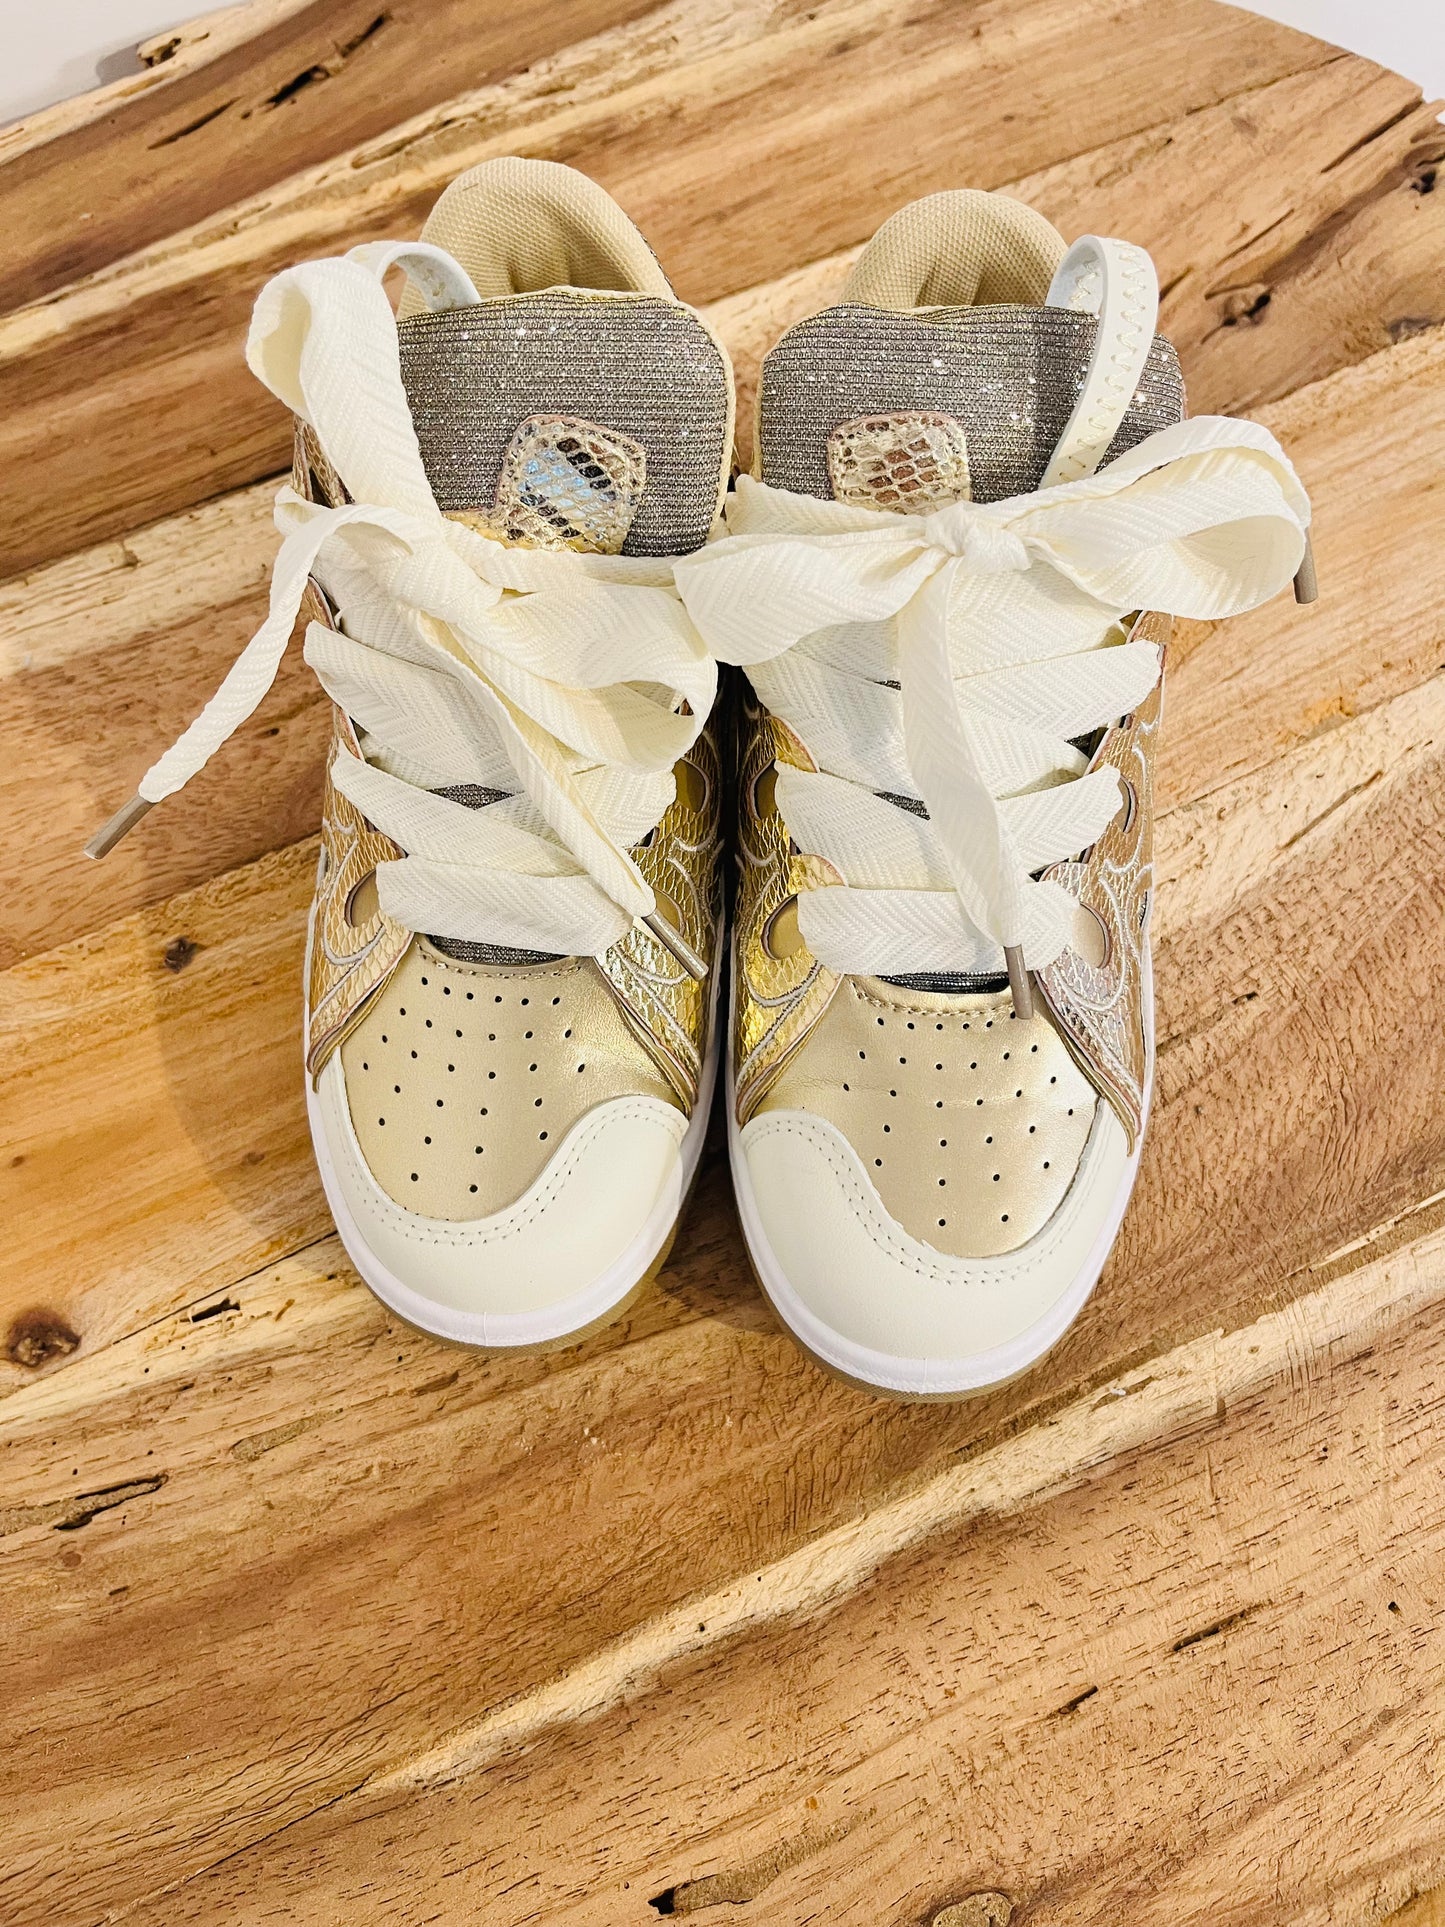 Sneakers golden patta’s